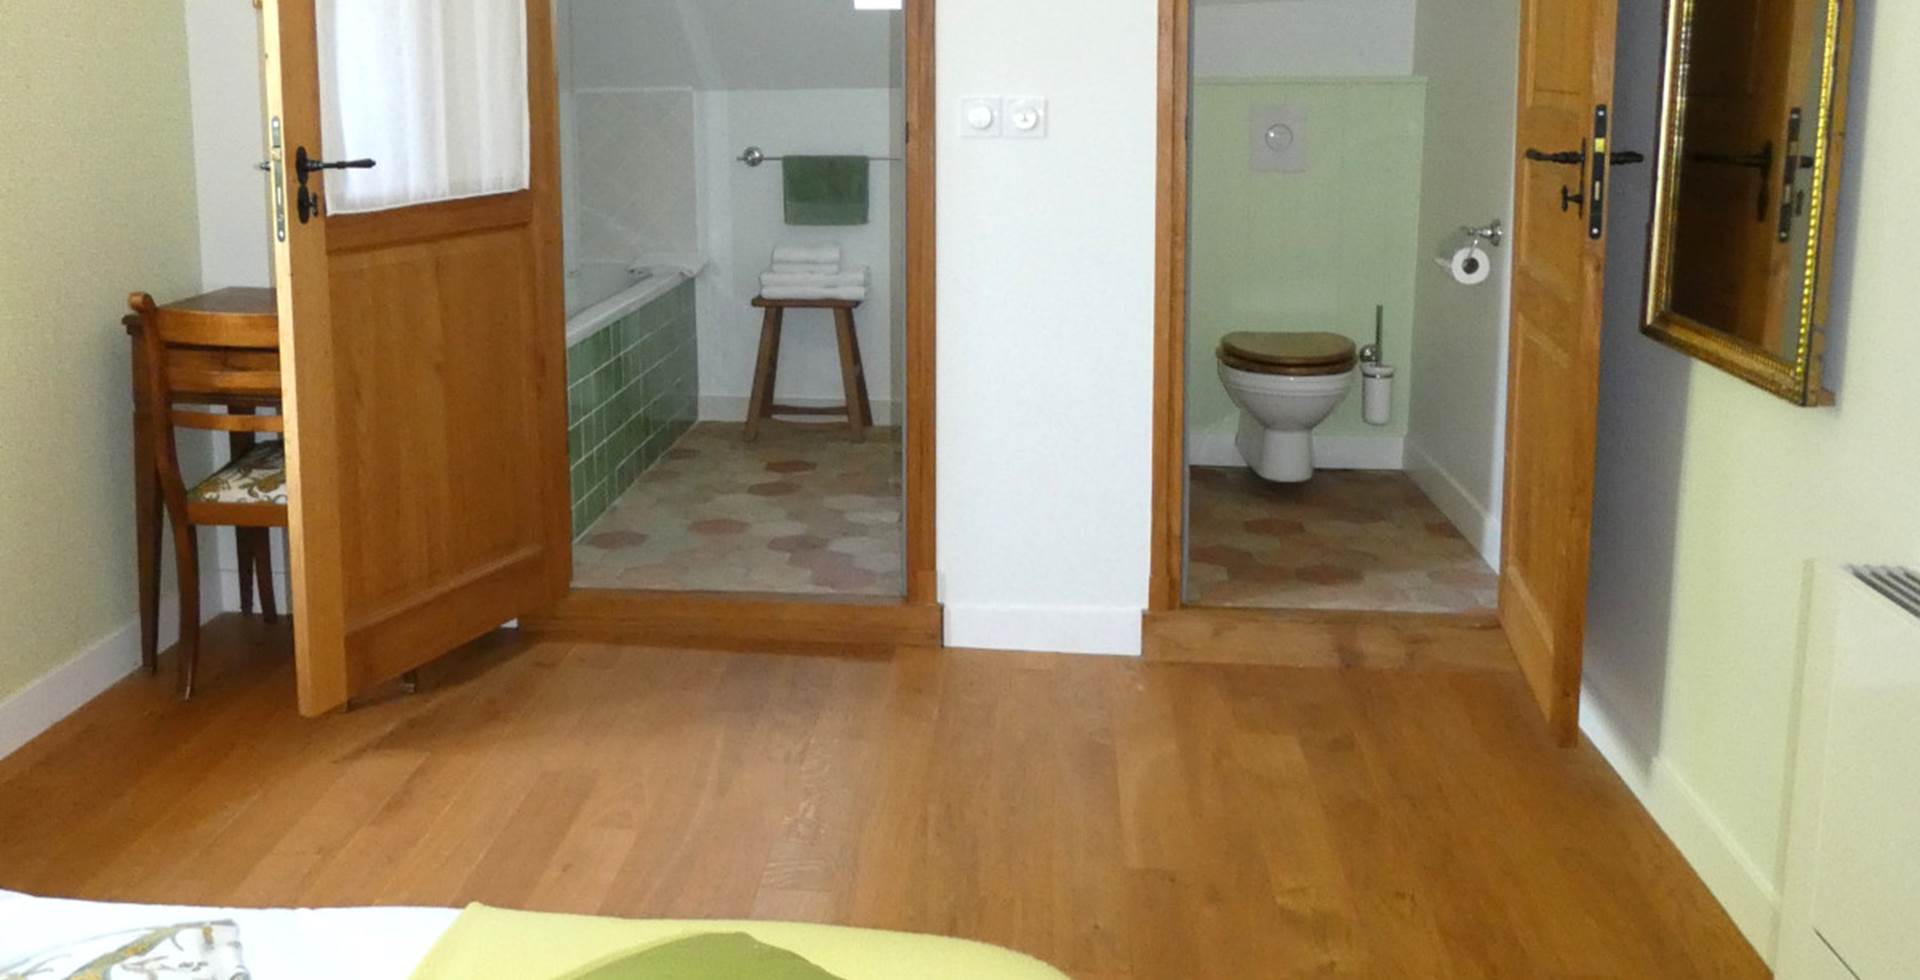 Salle de bains et WC dans les chambres ici au Chasseur d'Afrique